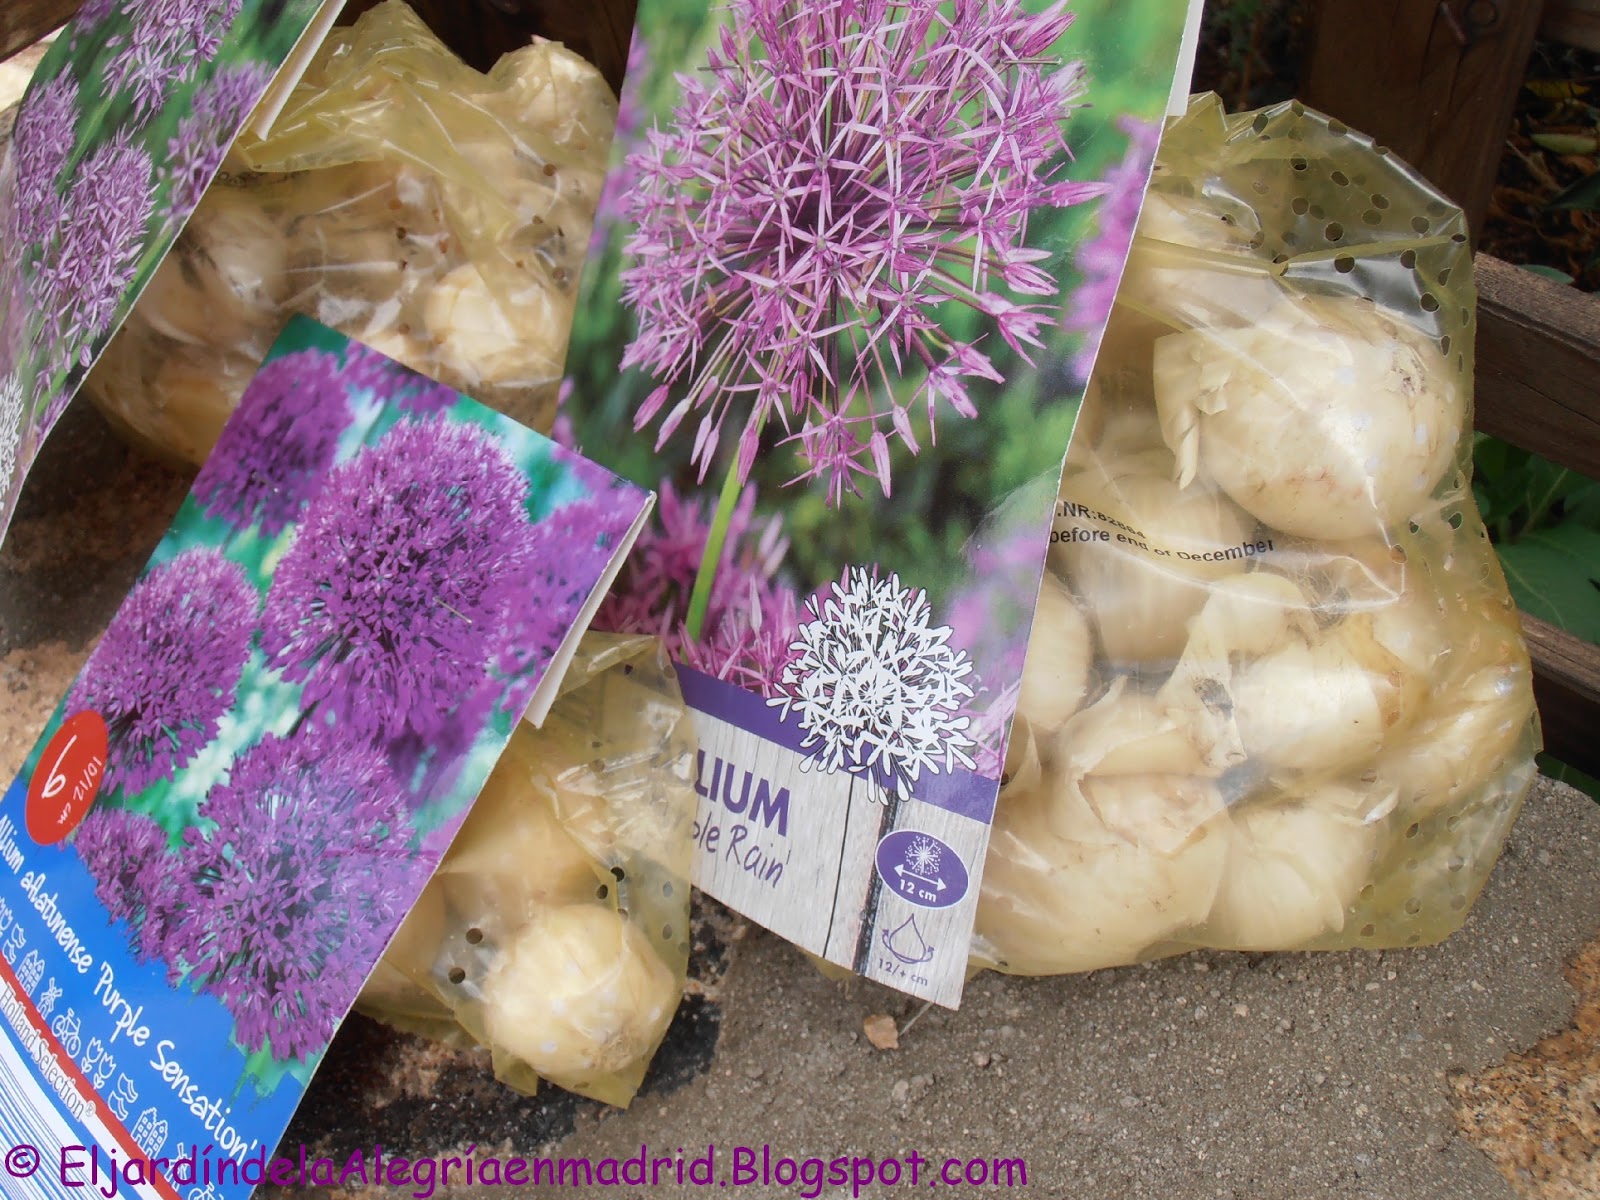 El jardín de la alegría : Oferta de de Allium y herramientas de jardín en el Lidl esta 17-09-2015